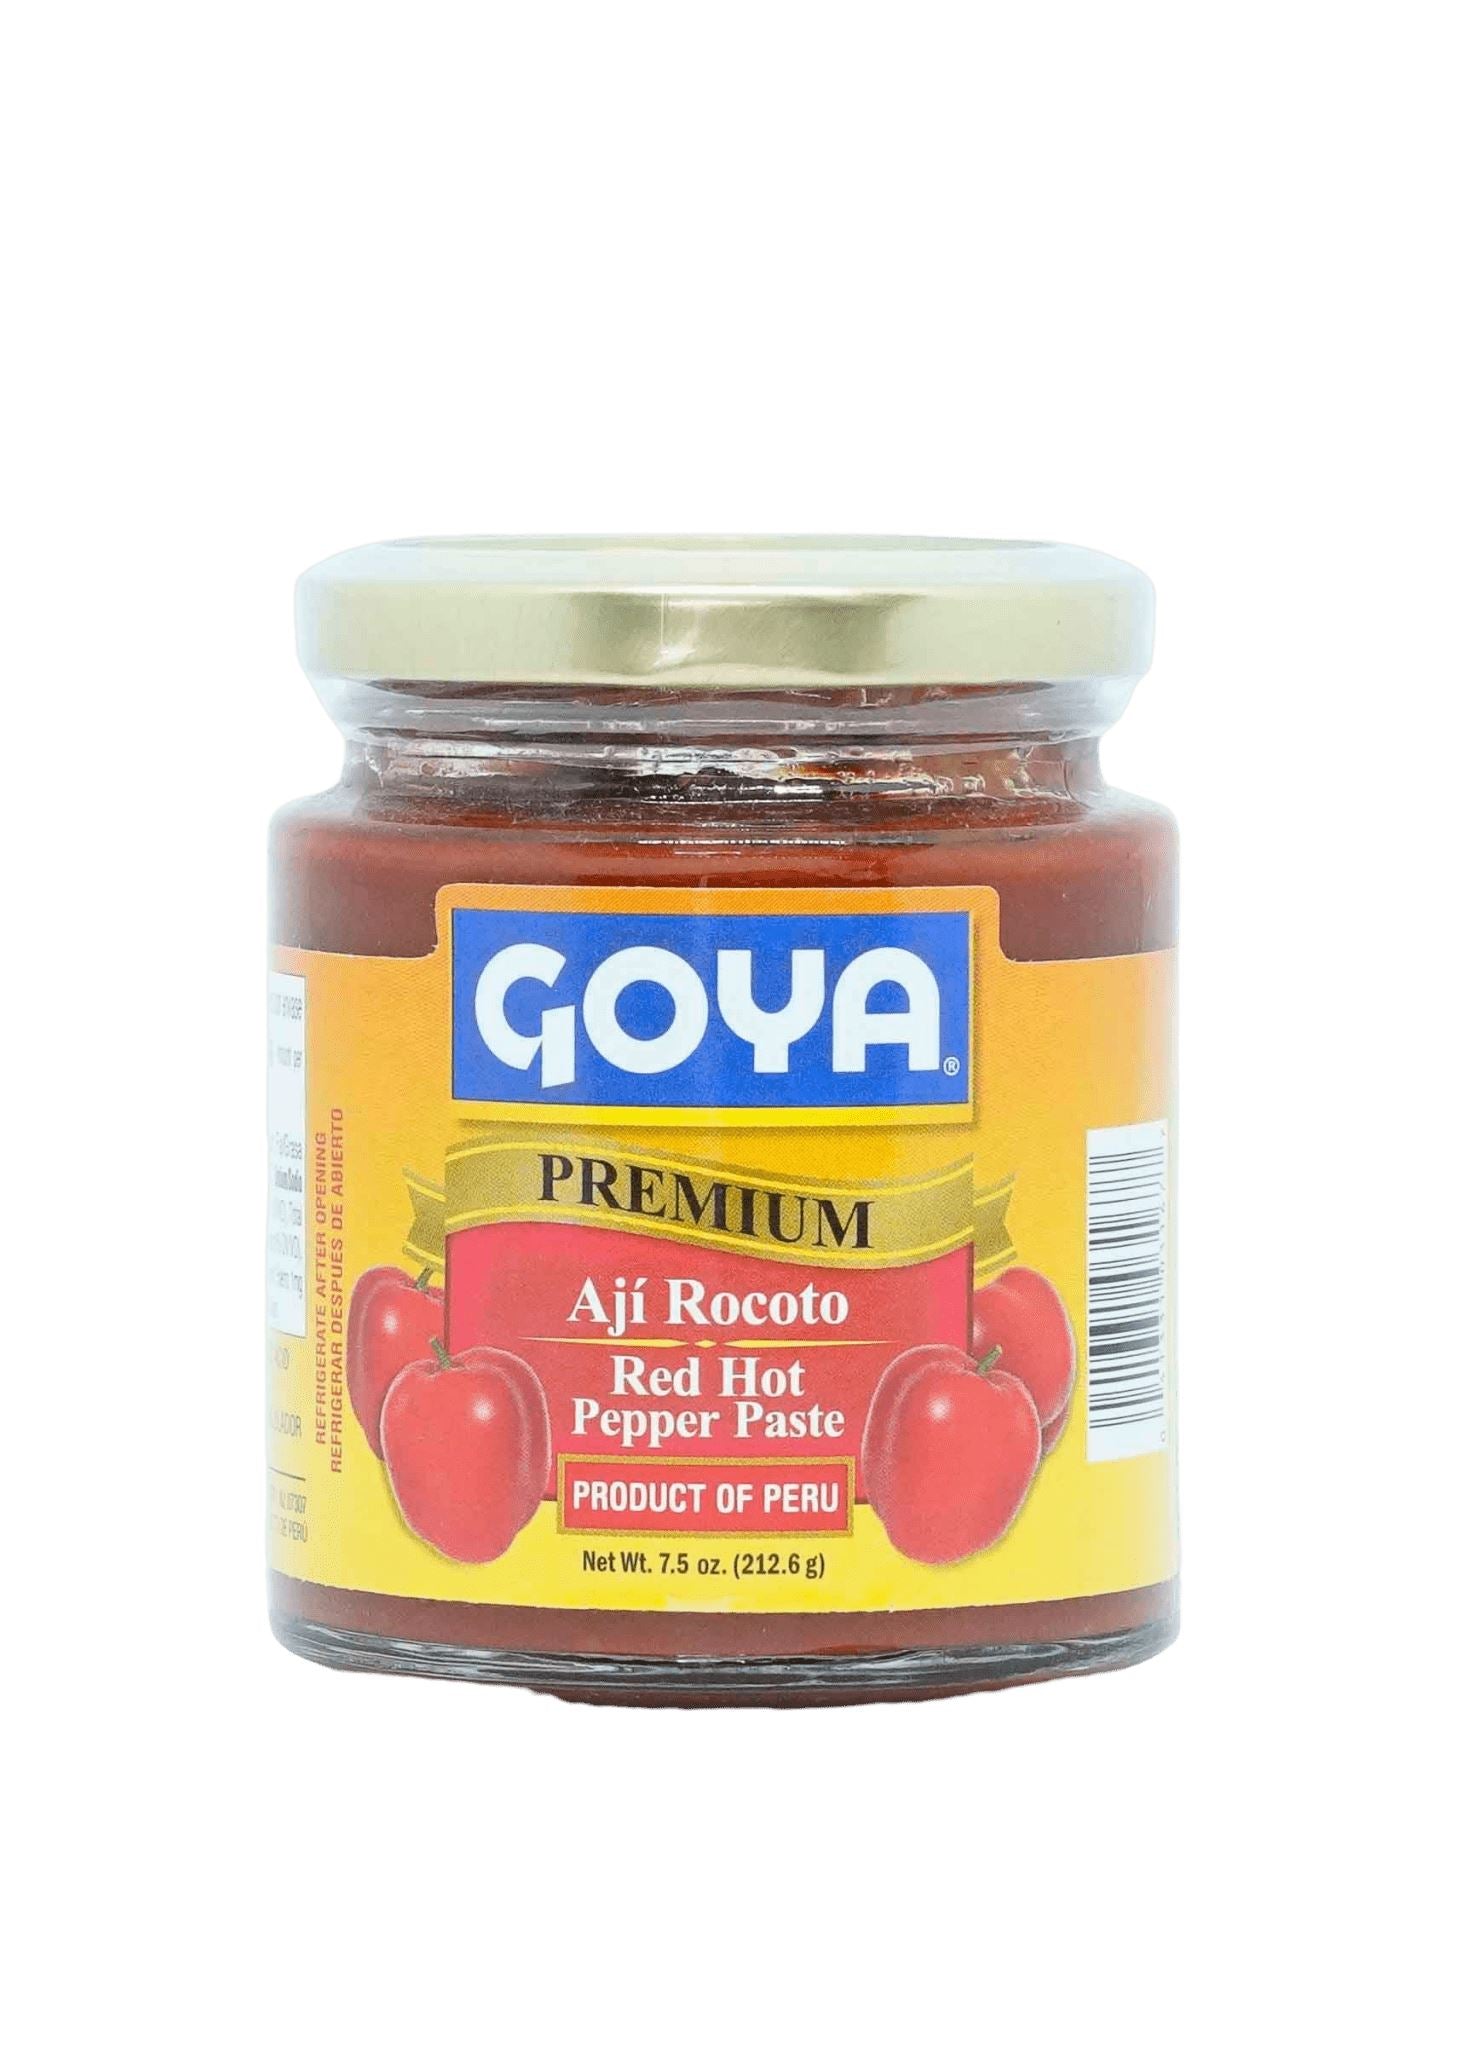 Goya Rocoto Pepper Paste 212g Chillies Goya 